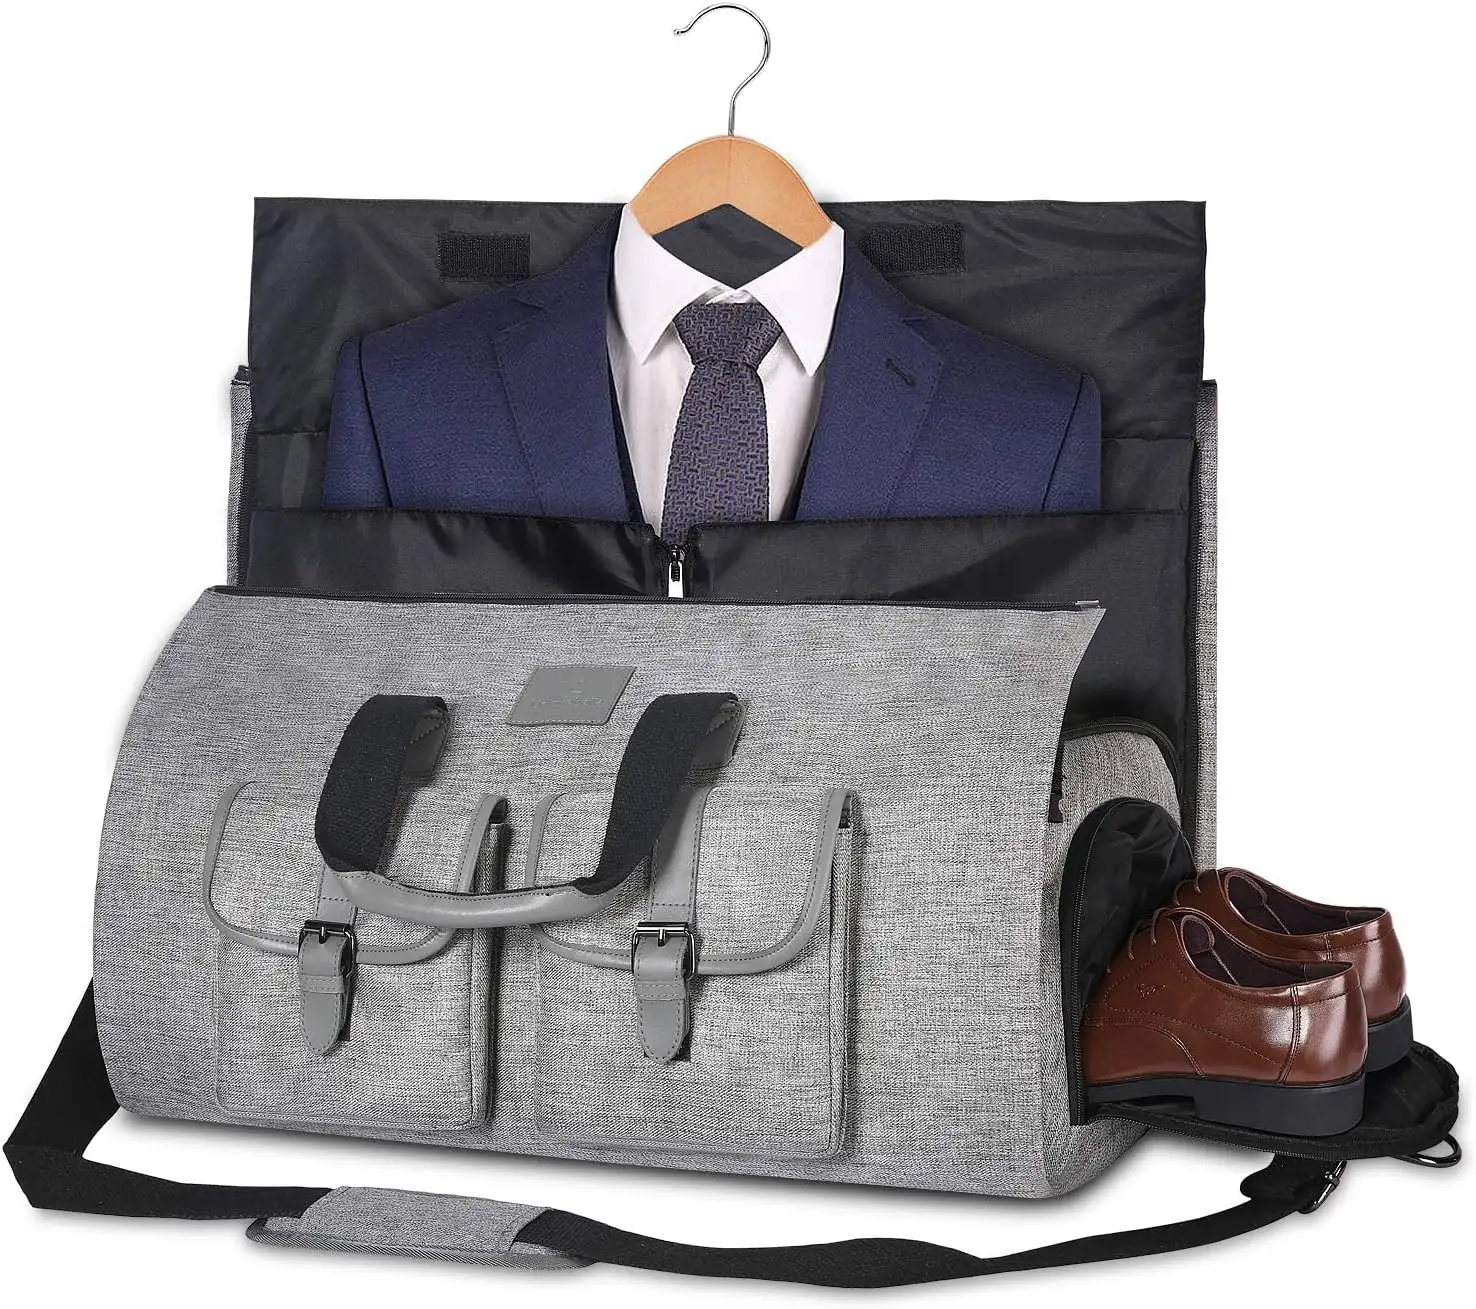 Mochila grande de mão para viagem, bolsa de viagem com bolsa para sapatos, ideal para homens e mulheres, ideal para uso em viagens de fim de semana